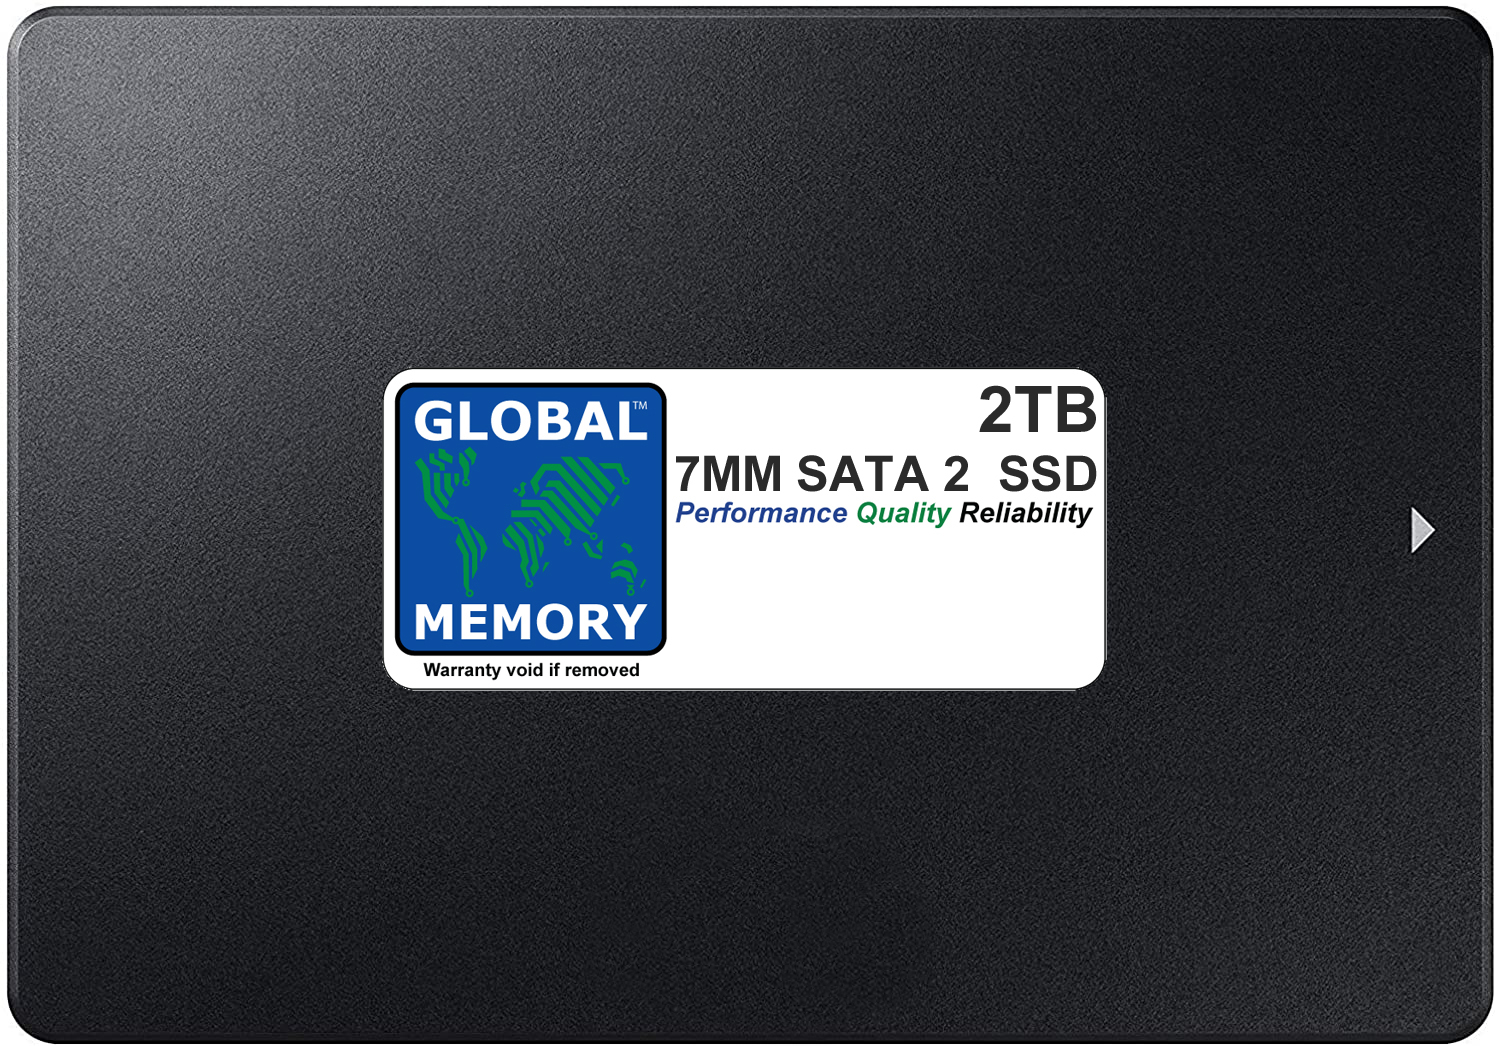 2TB 7mm 2.5" SATA 2 SSD FOR MACBOOK PRO NON RETINA (2006 - 2007 - 2008 - 2009 - 2010)